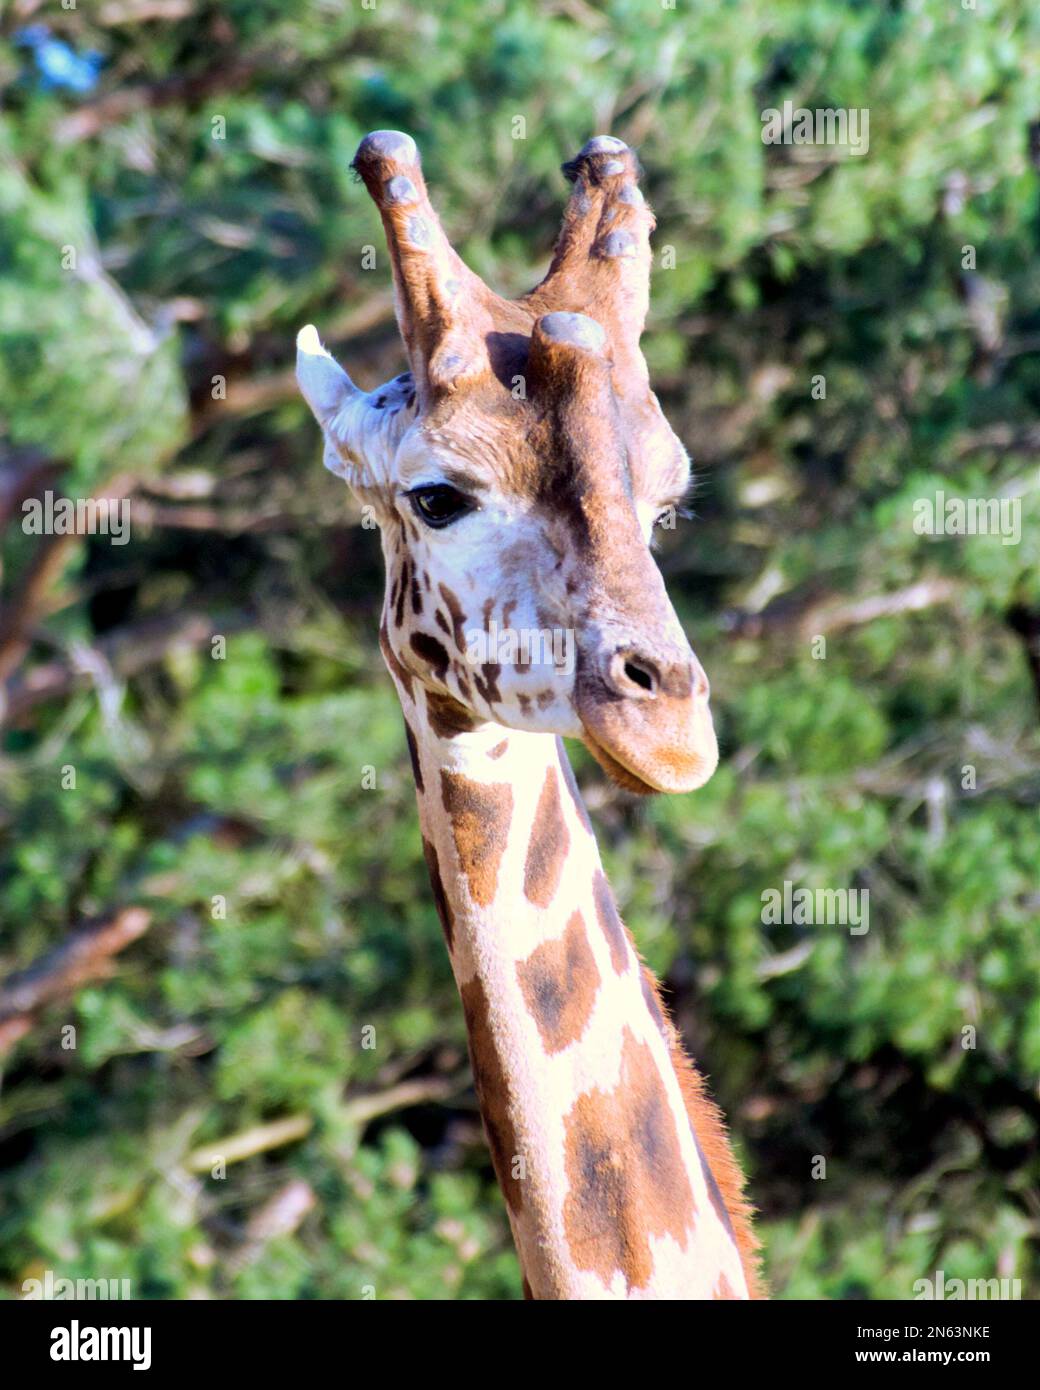 Funny giraffe genus Giraffe head shot Stock Photo